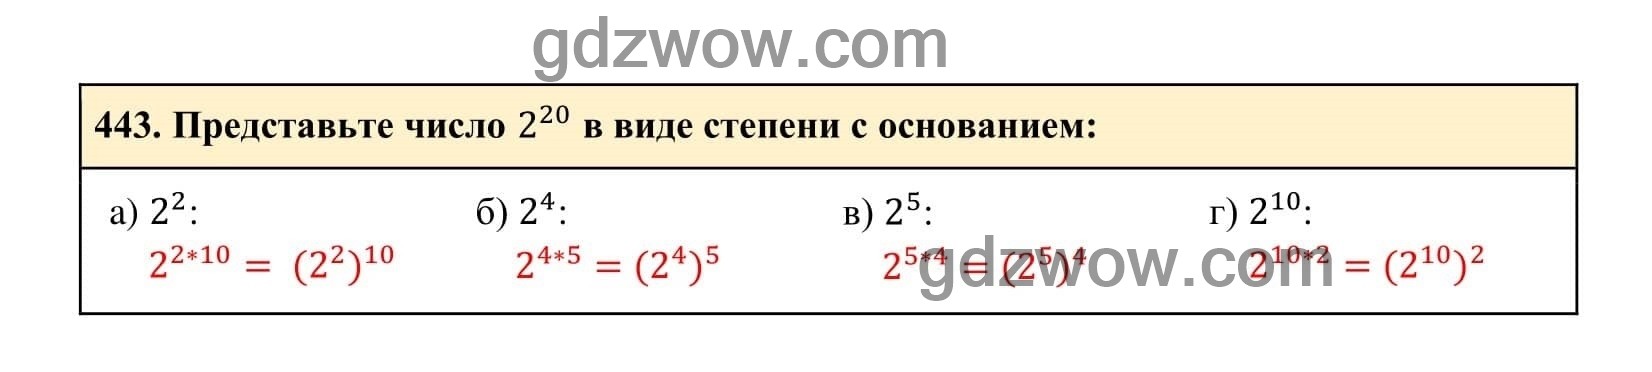 Упражнение 443 - ГДЗ по Алгебре 7 класс Учебник Макарычев (решебник) - GDZwow